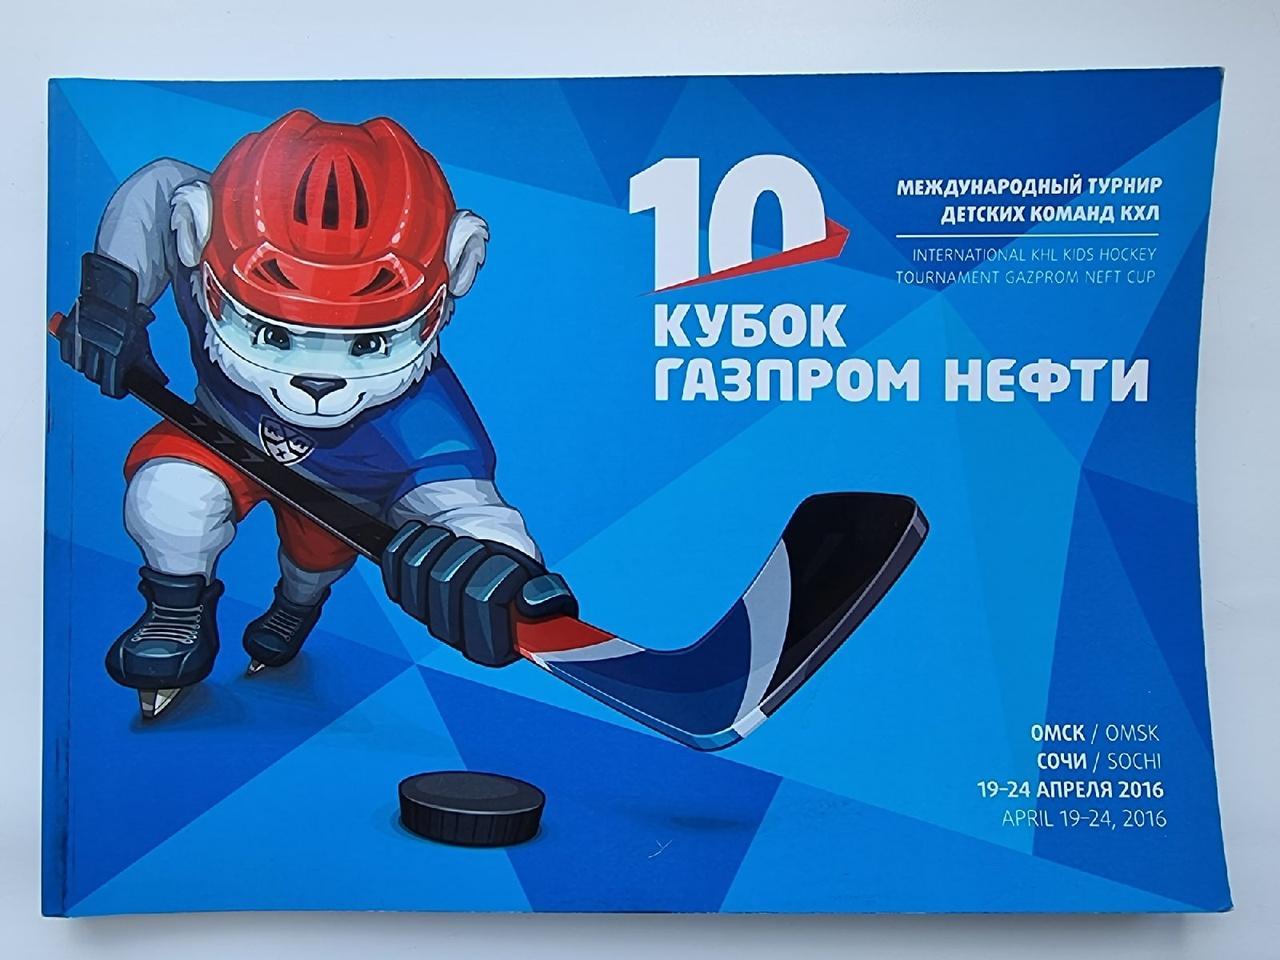 Сочи/Омск. Кубок Газпром Нефти 2016 (все клубы КХЛ - на 2-ом фото)